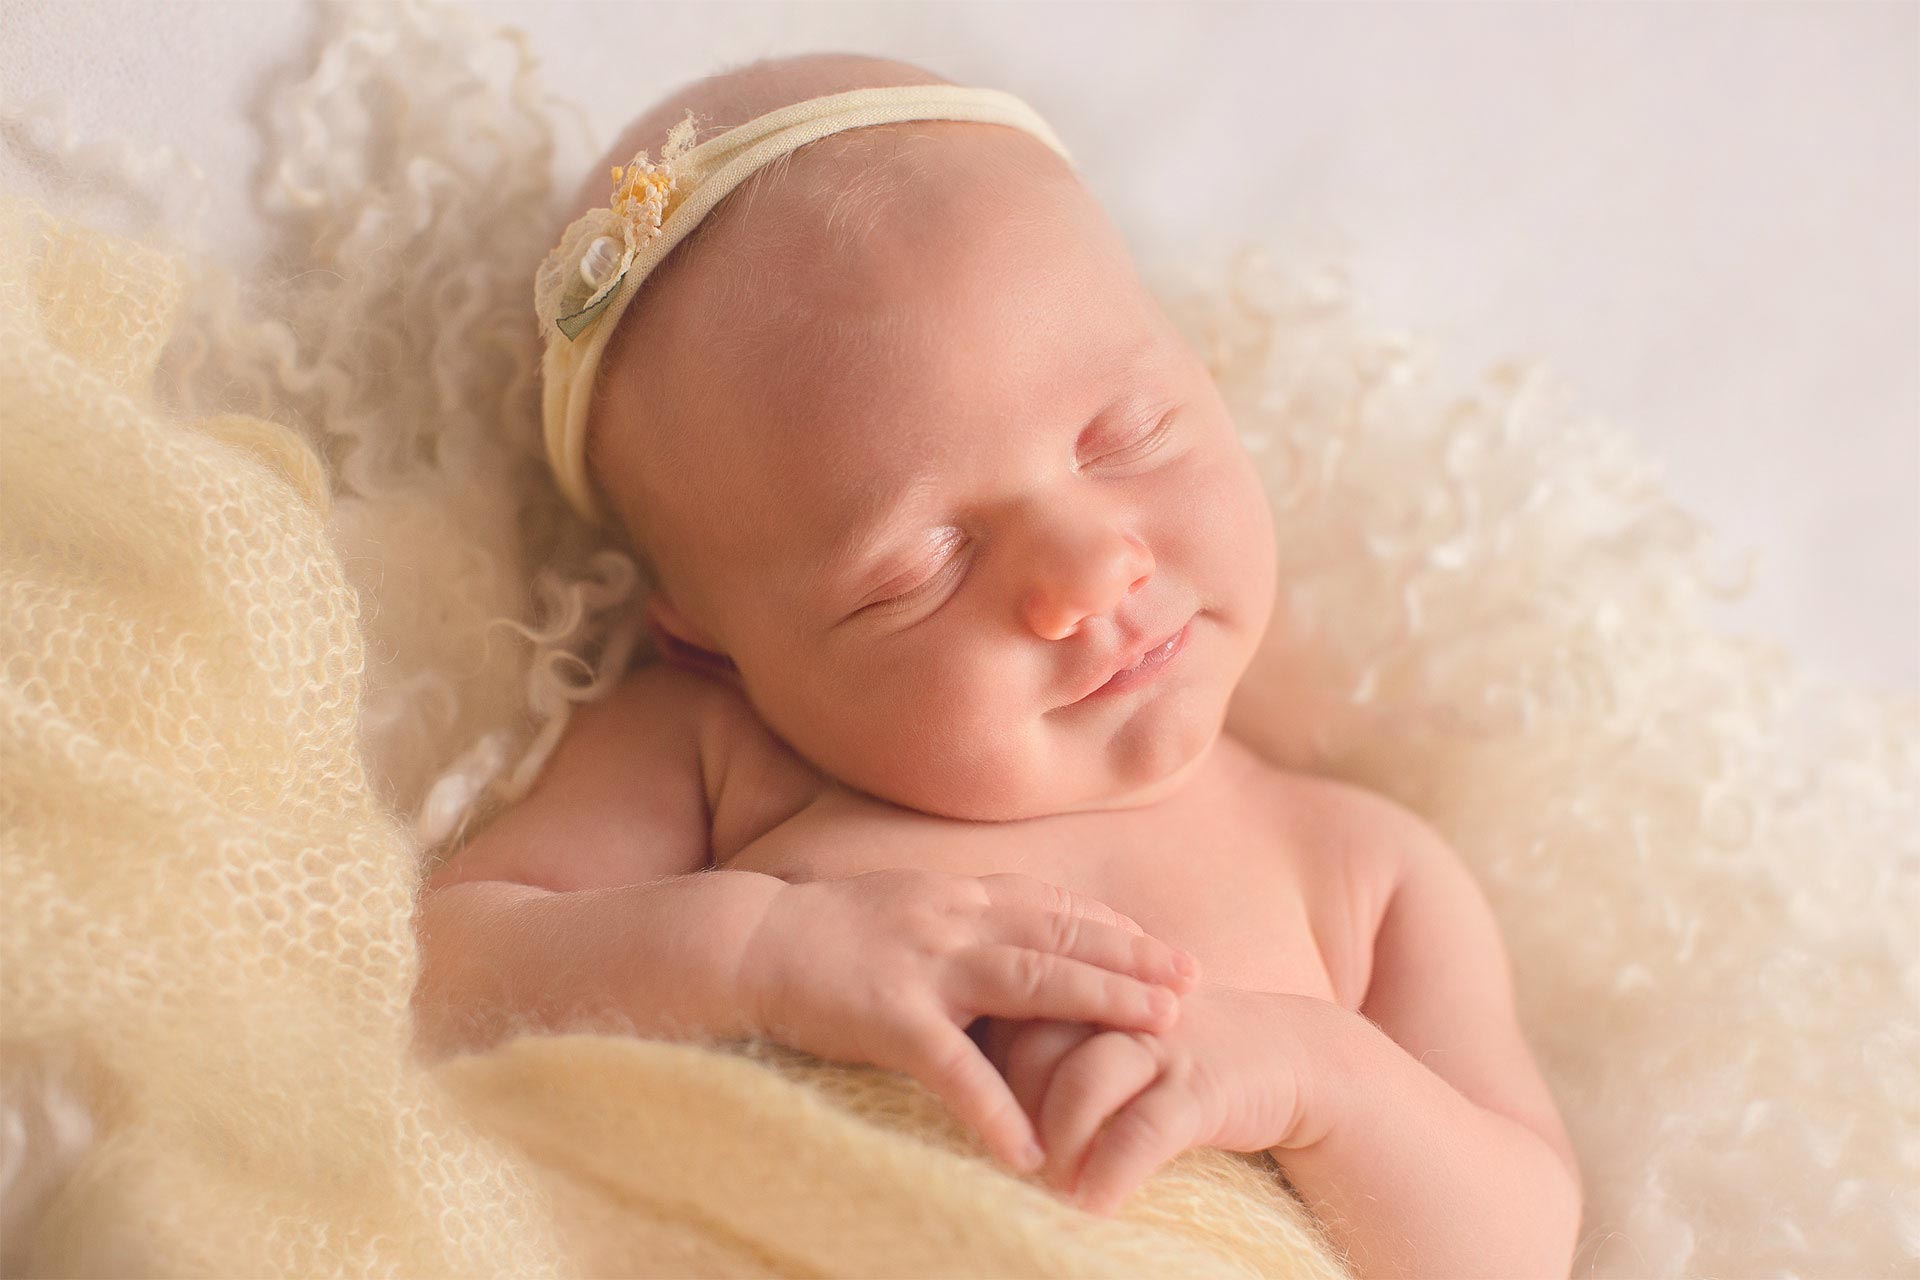 Стулова Полина, художественное фото новорожденных